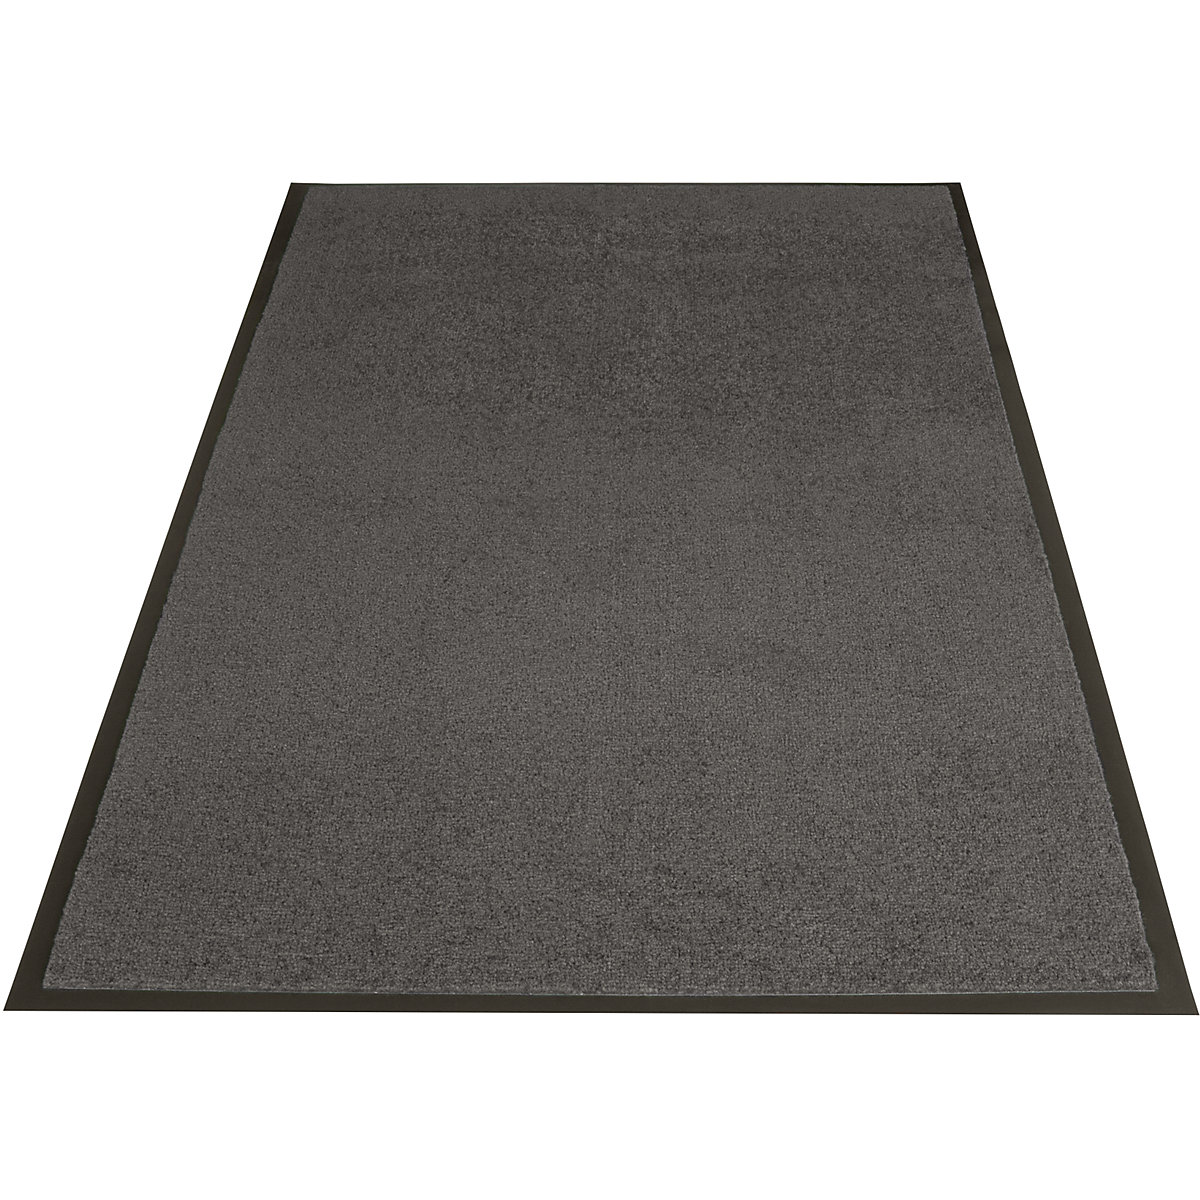 EAZYCARE BASIC entrance matting